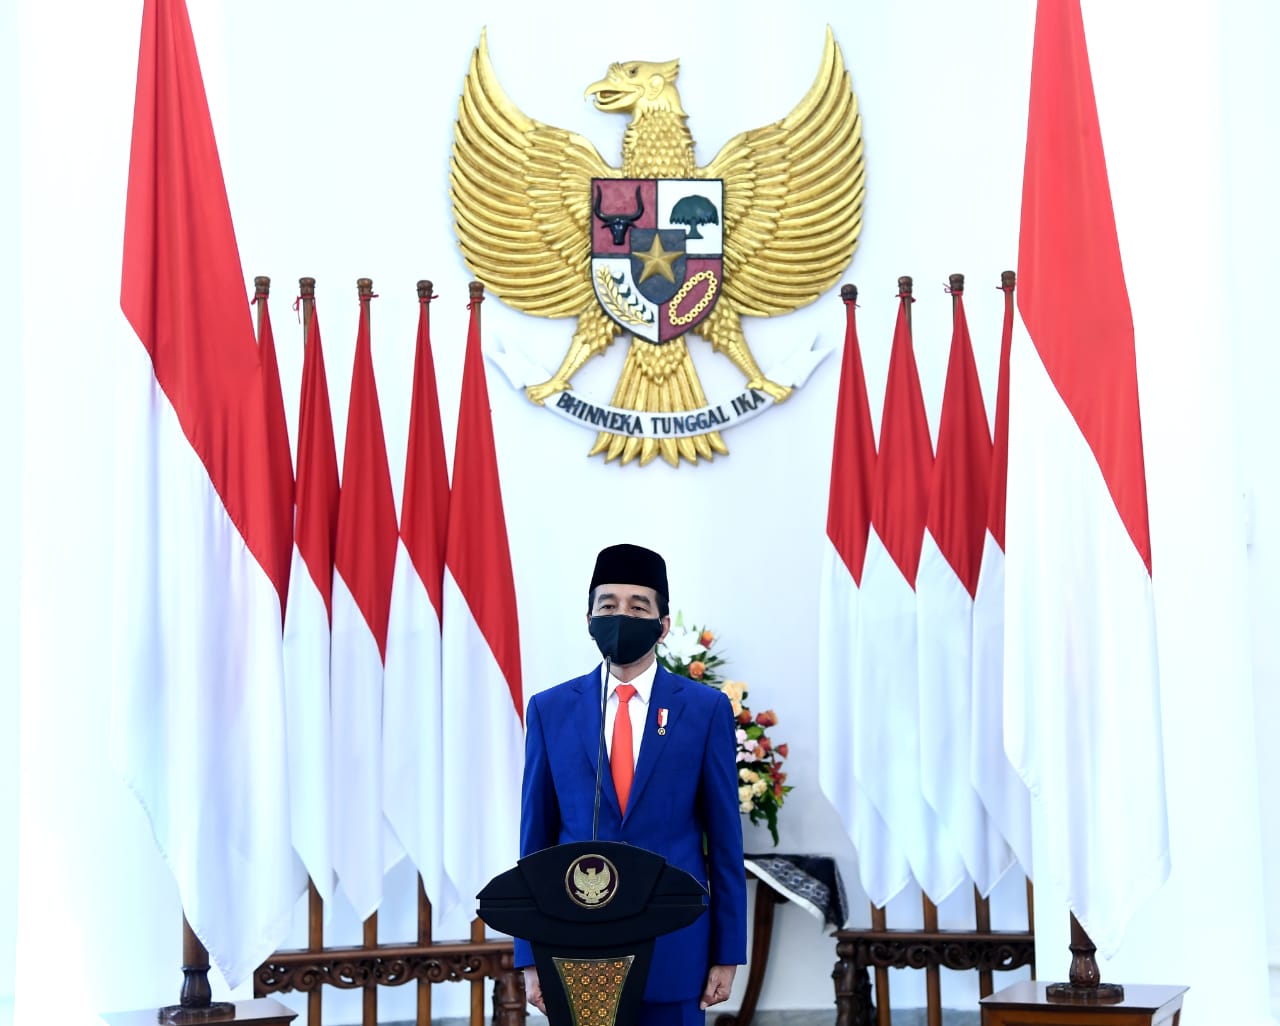 Presiden Joko Widodo saat memperingati Hari Lahir Pancasila yang pada kali ini digelar melalui telekonferensi dari Ruang Garuda, Istana Kepresidenan Bogor, Jawa Barat, pada Senin, 1 Juni 2020